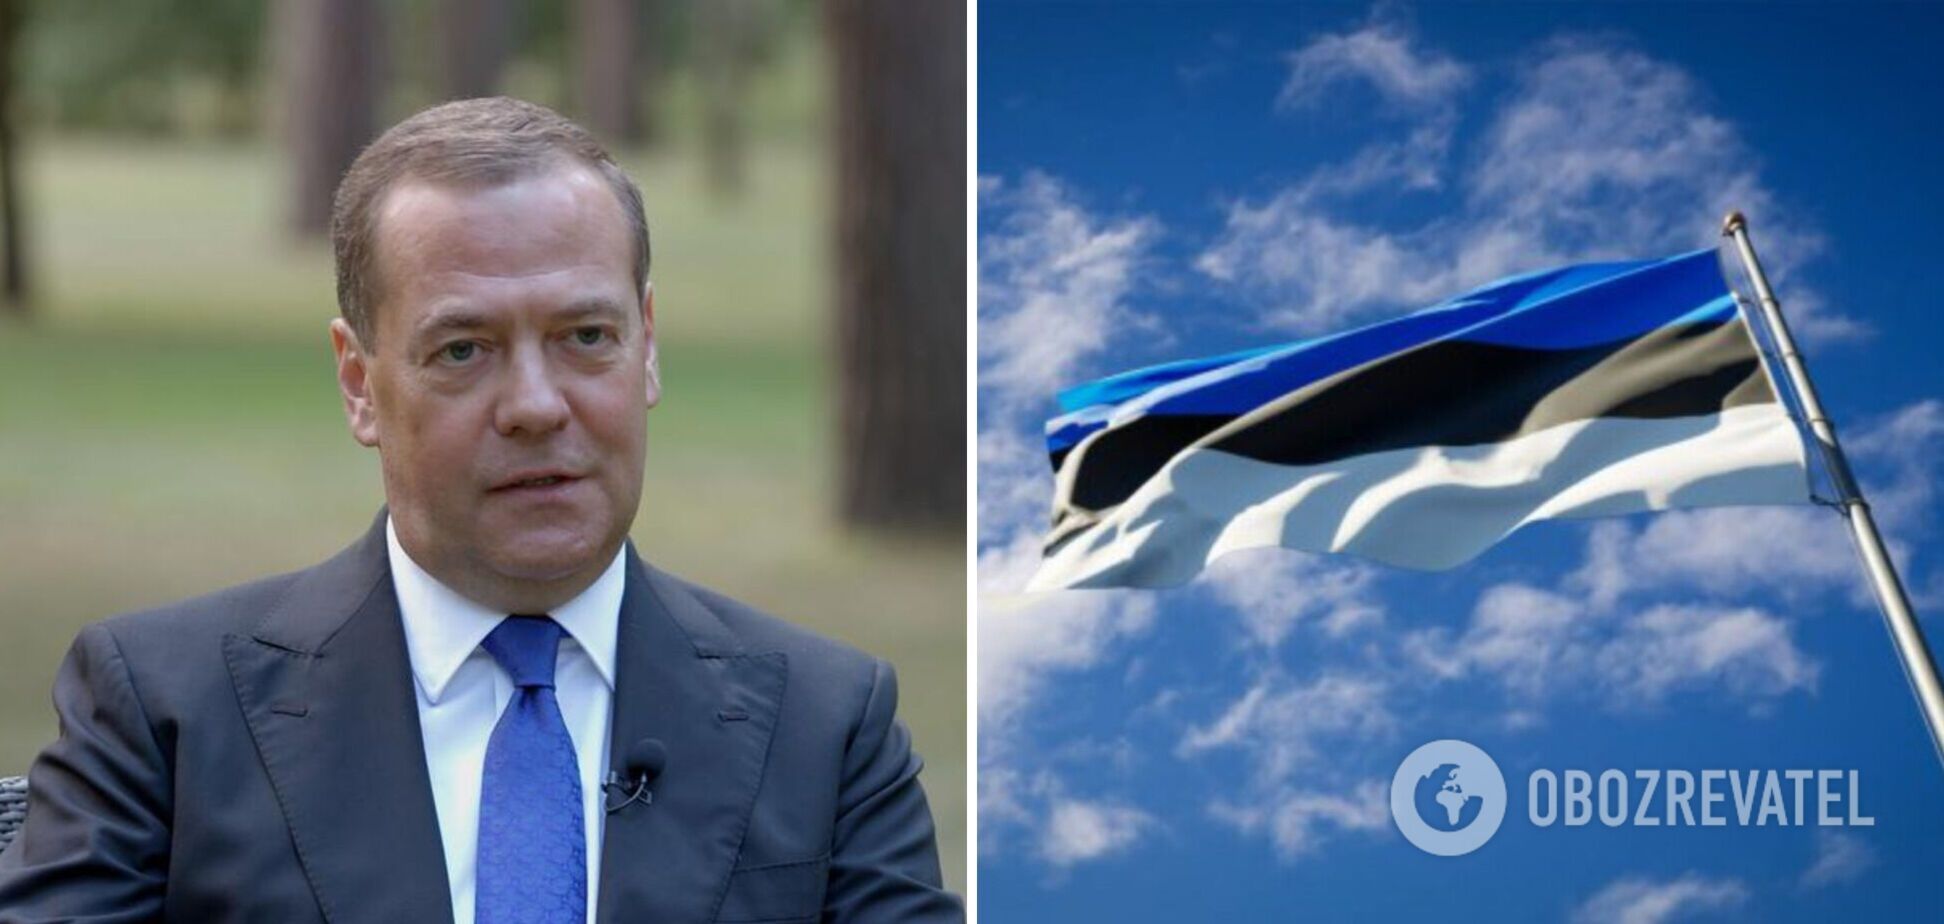 'То, что вы на свободе, – наша недоработка': Медведев отметился новым хамством в адрес Эстонии